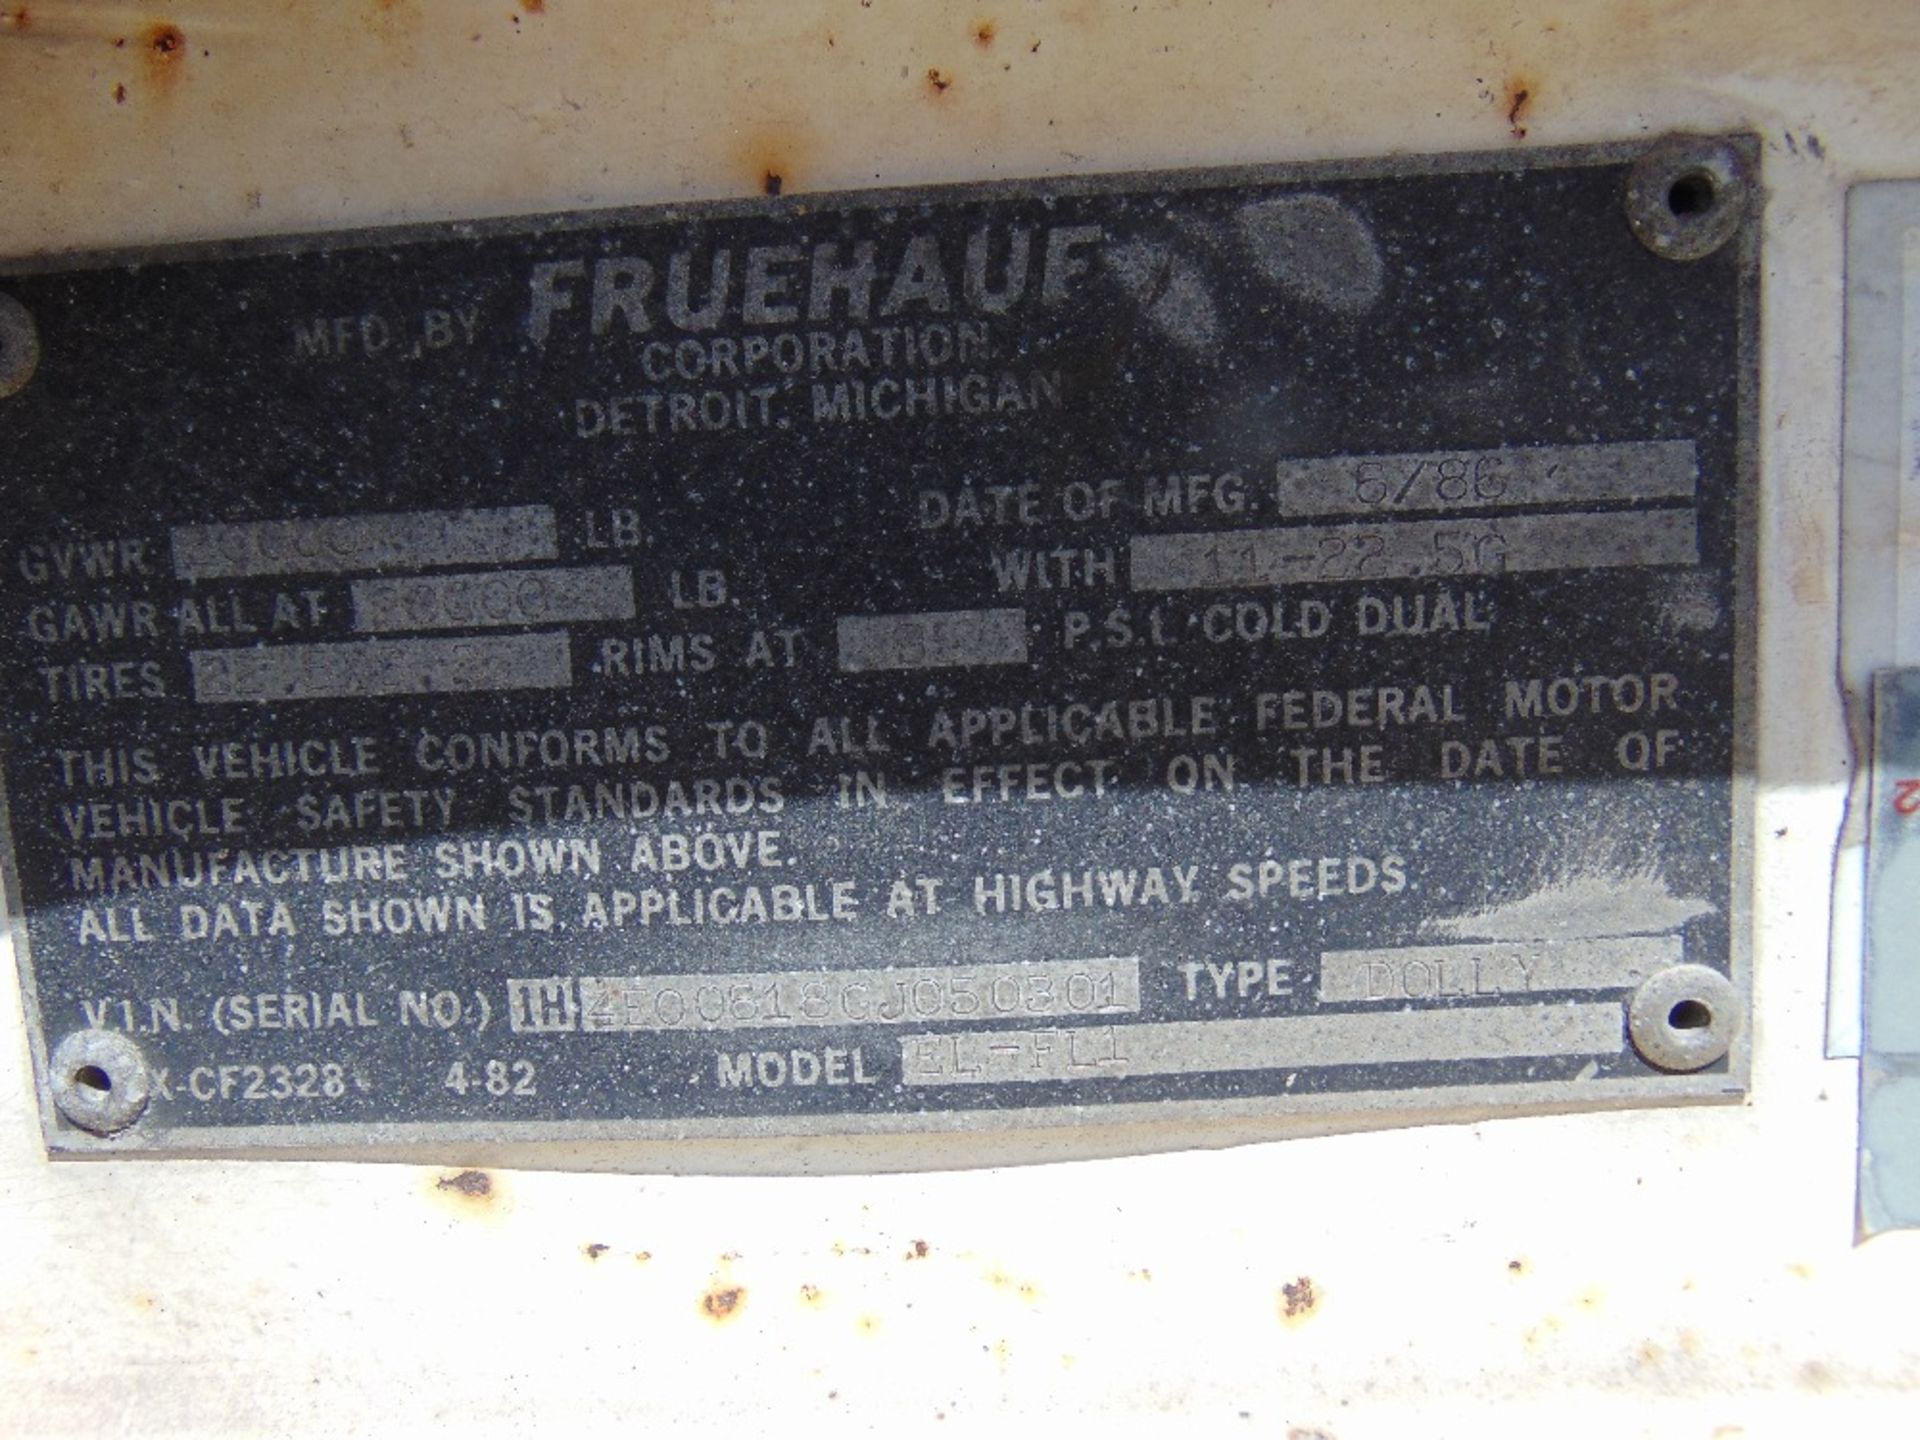 1986 Fruehauf mod. EL-FL1, Fifth Wheel Hitch, - Image 3 of 3